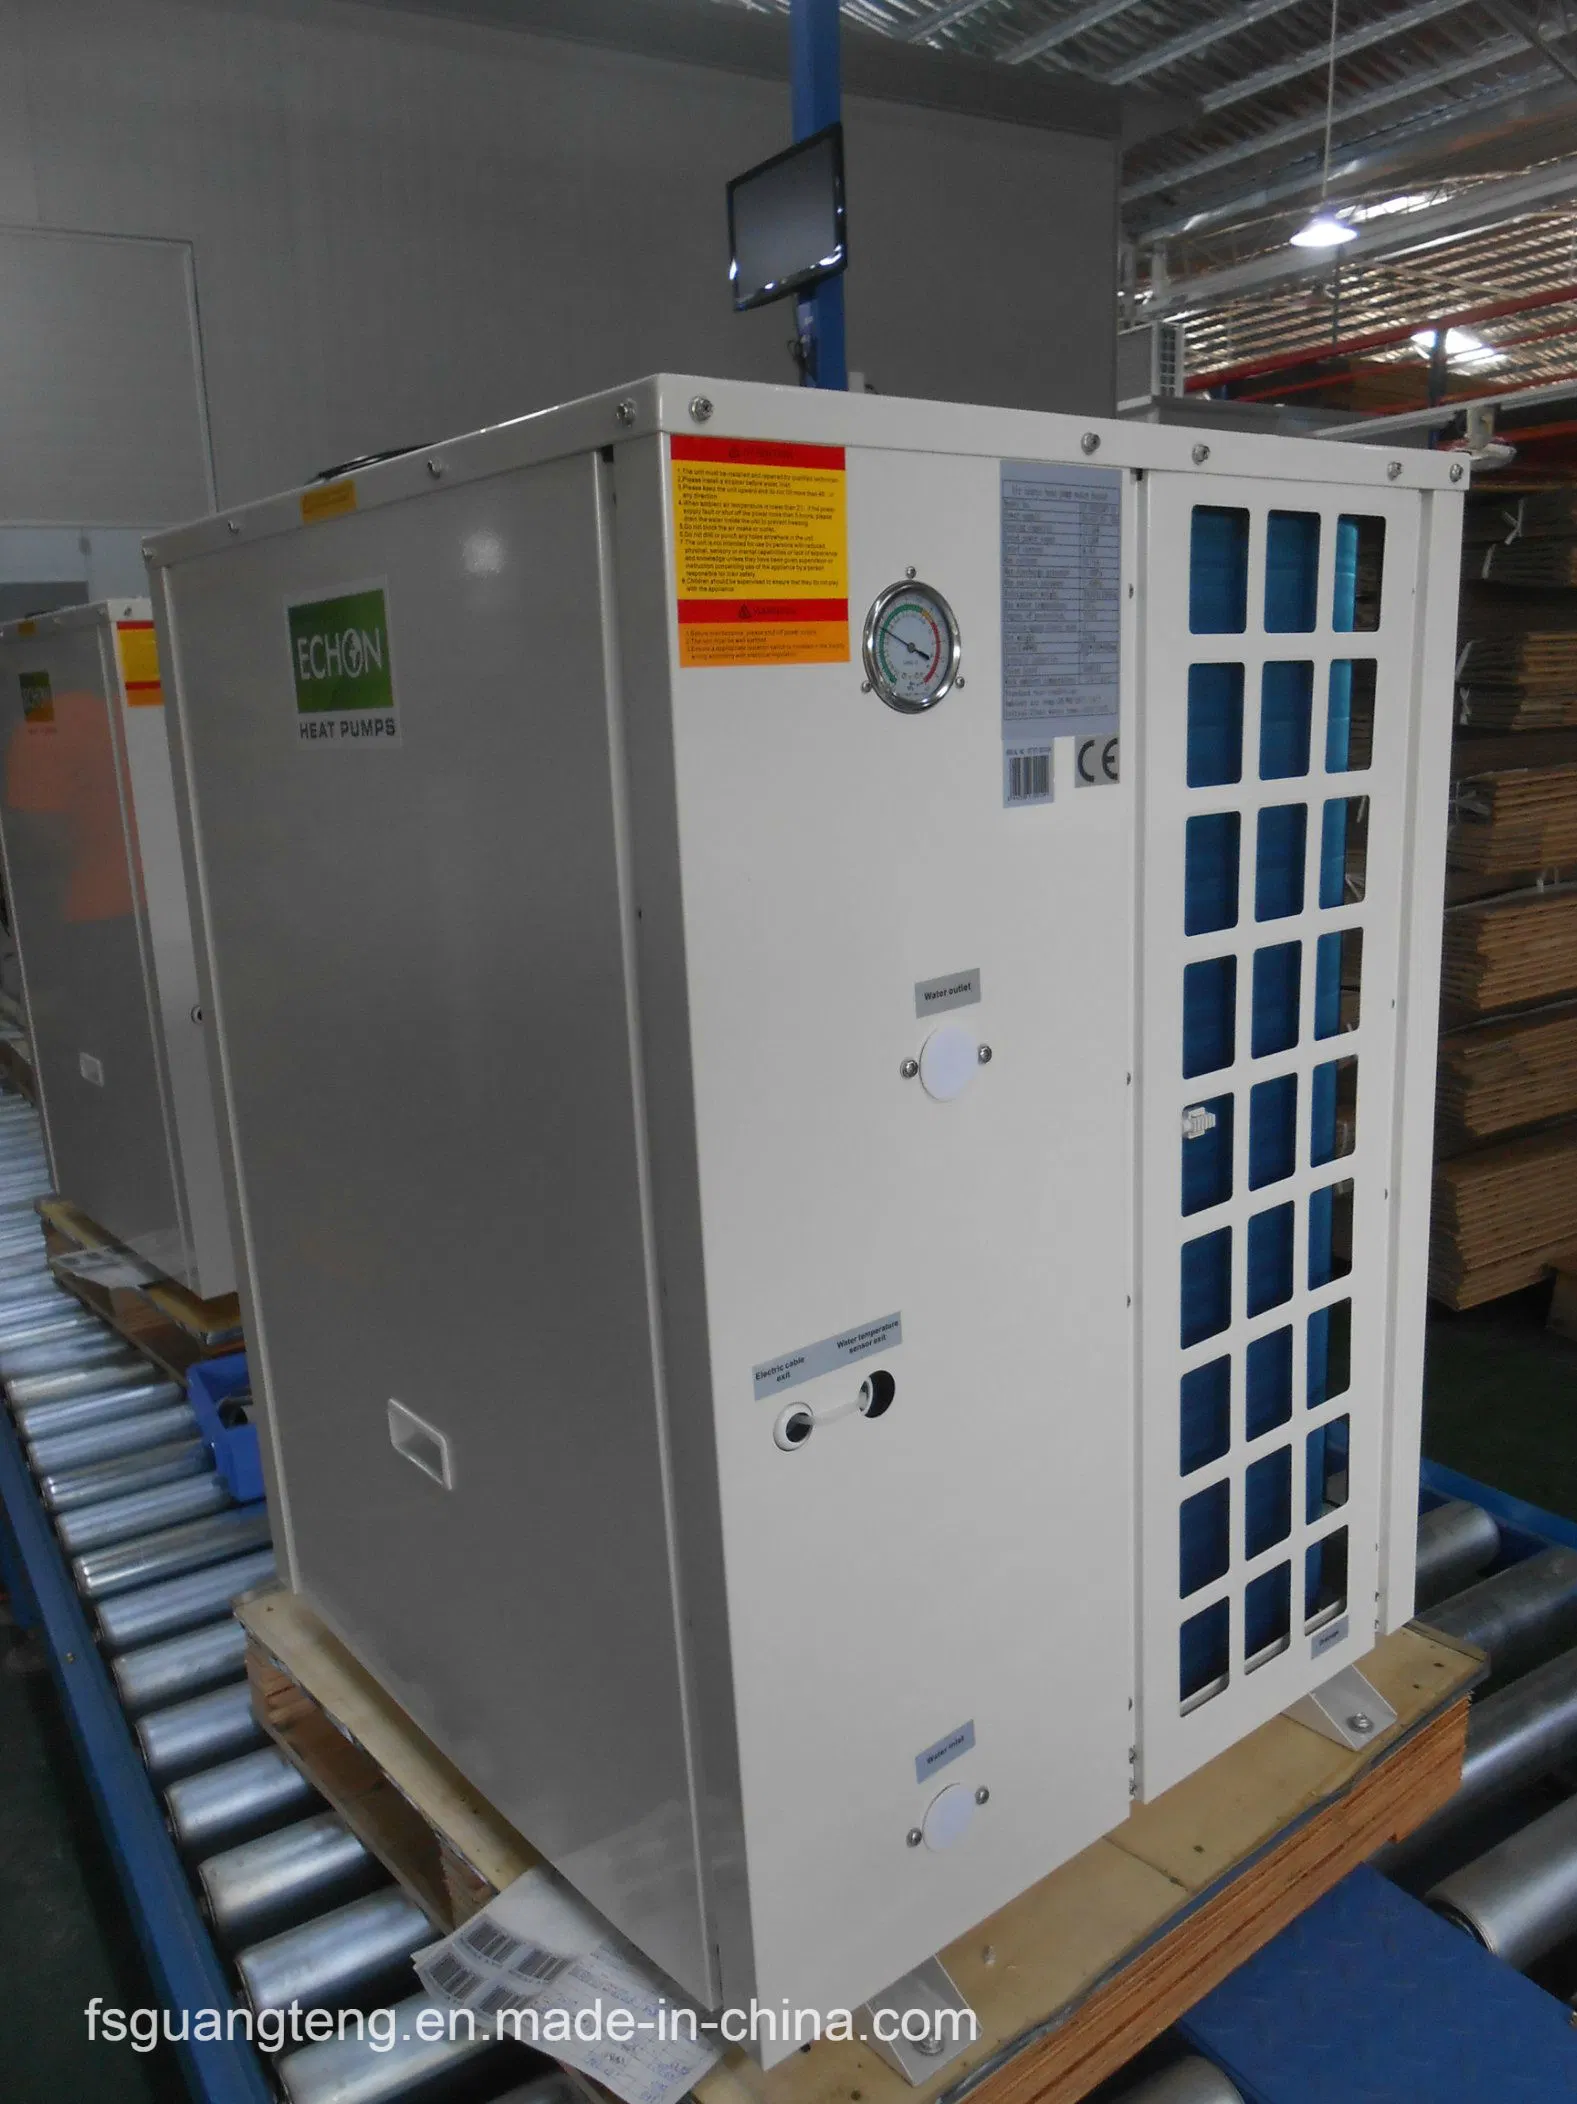 Guangteng Energieeinsparung Luftquelle Wärmepumpe 18kW Warmwasserbereiter Für Geschäftsgebäude GT-SKR18KP-10